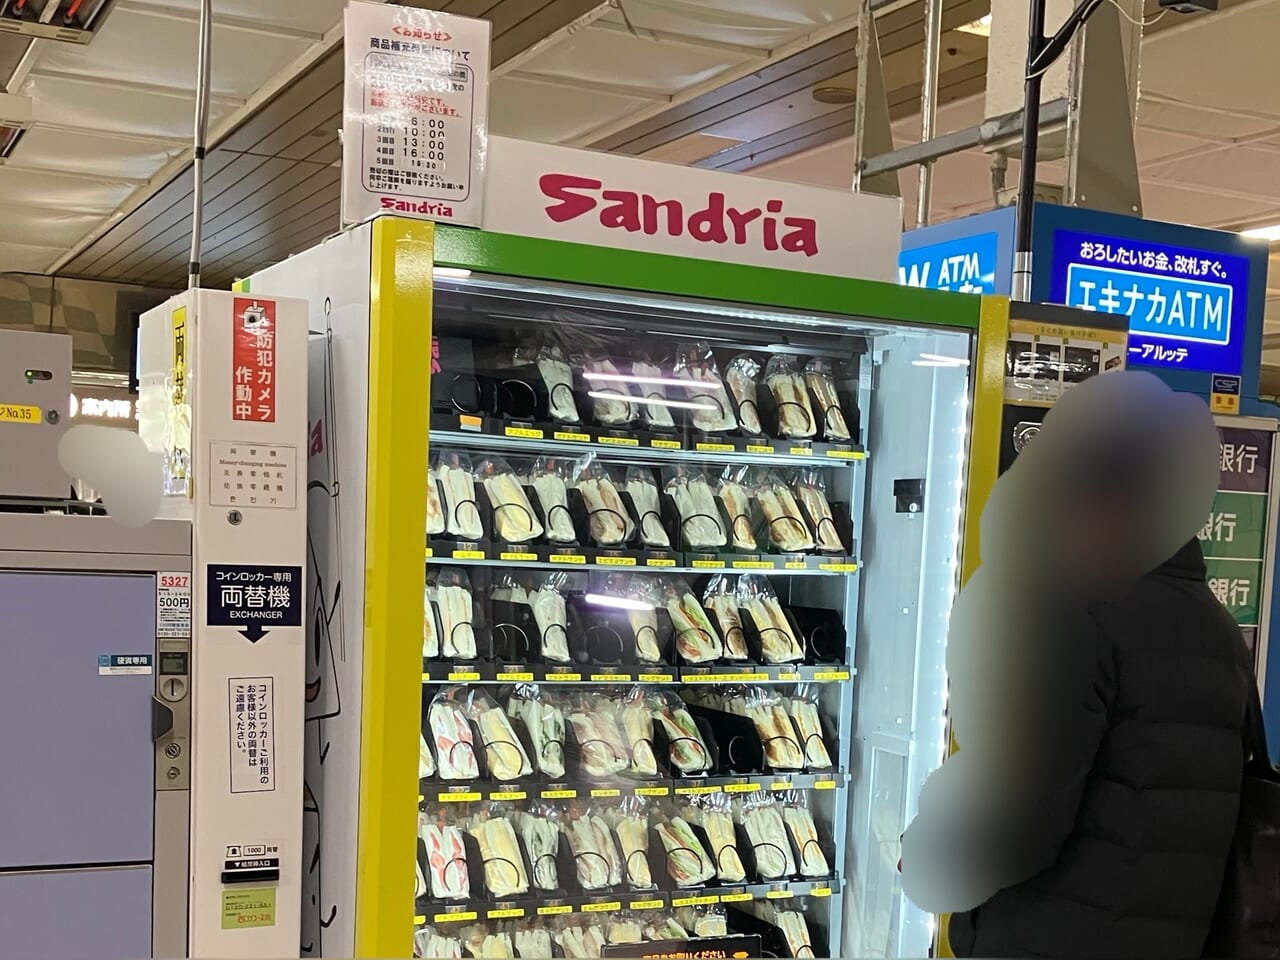 サンドリア自販機内のサンドイッチ